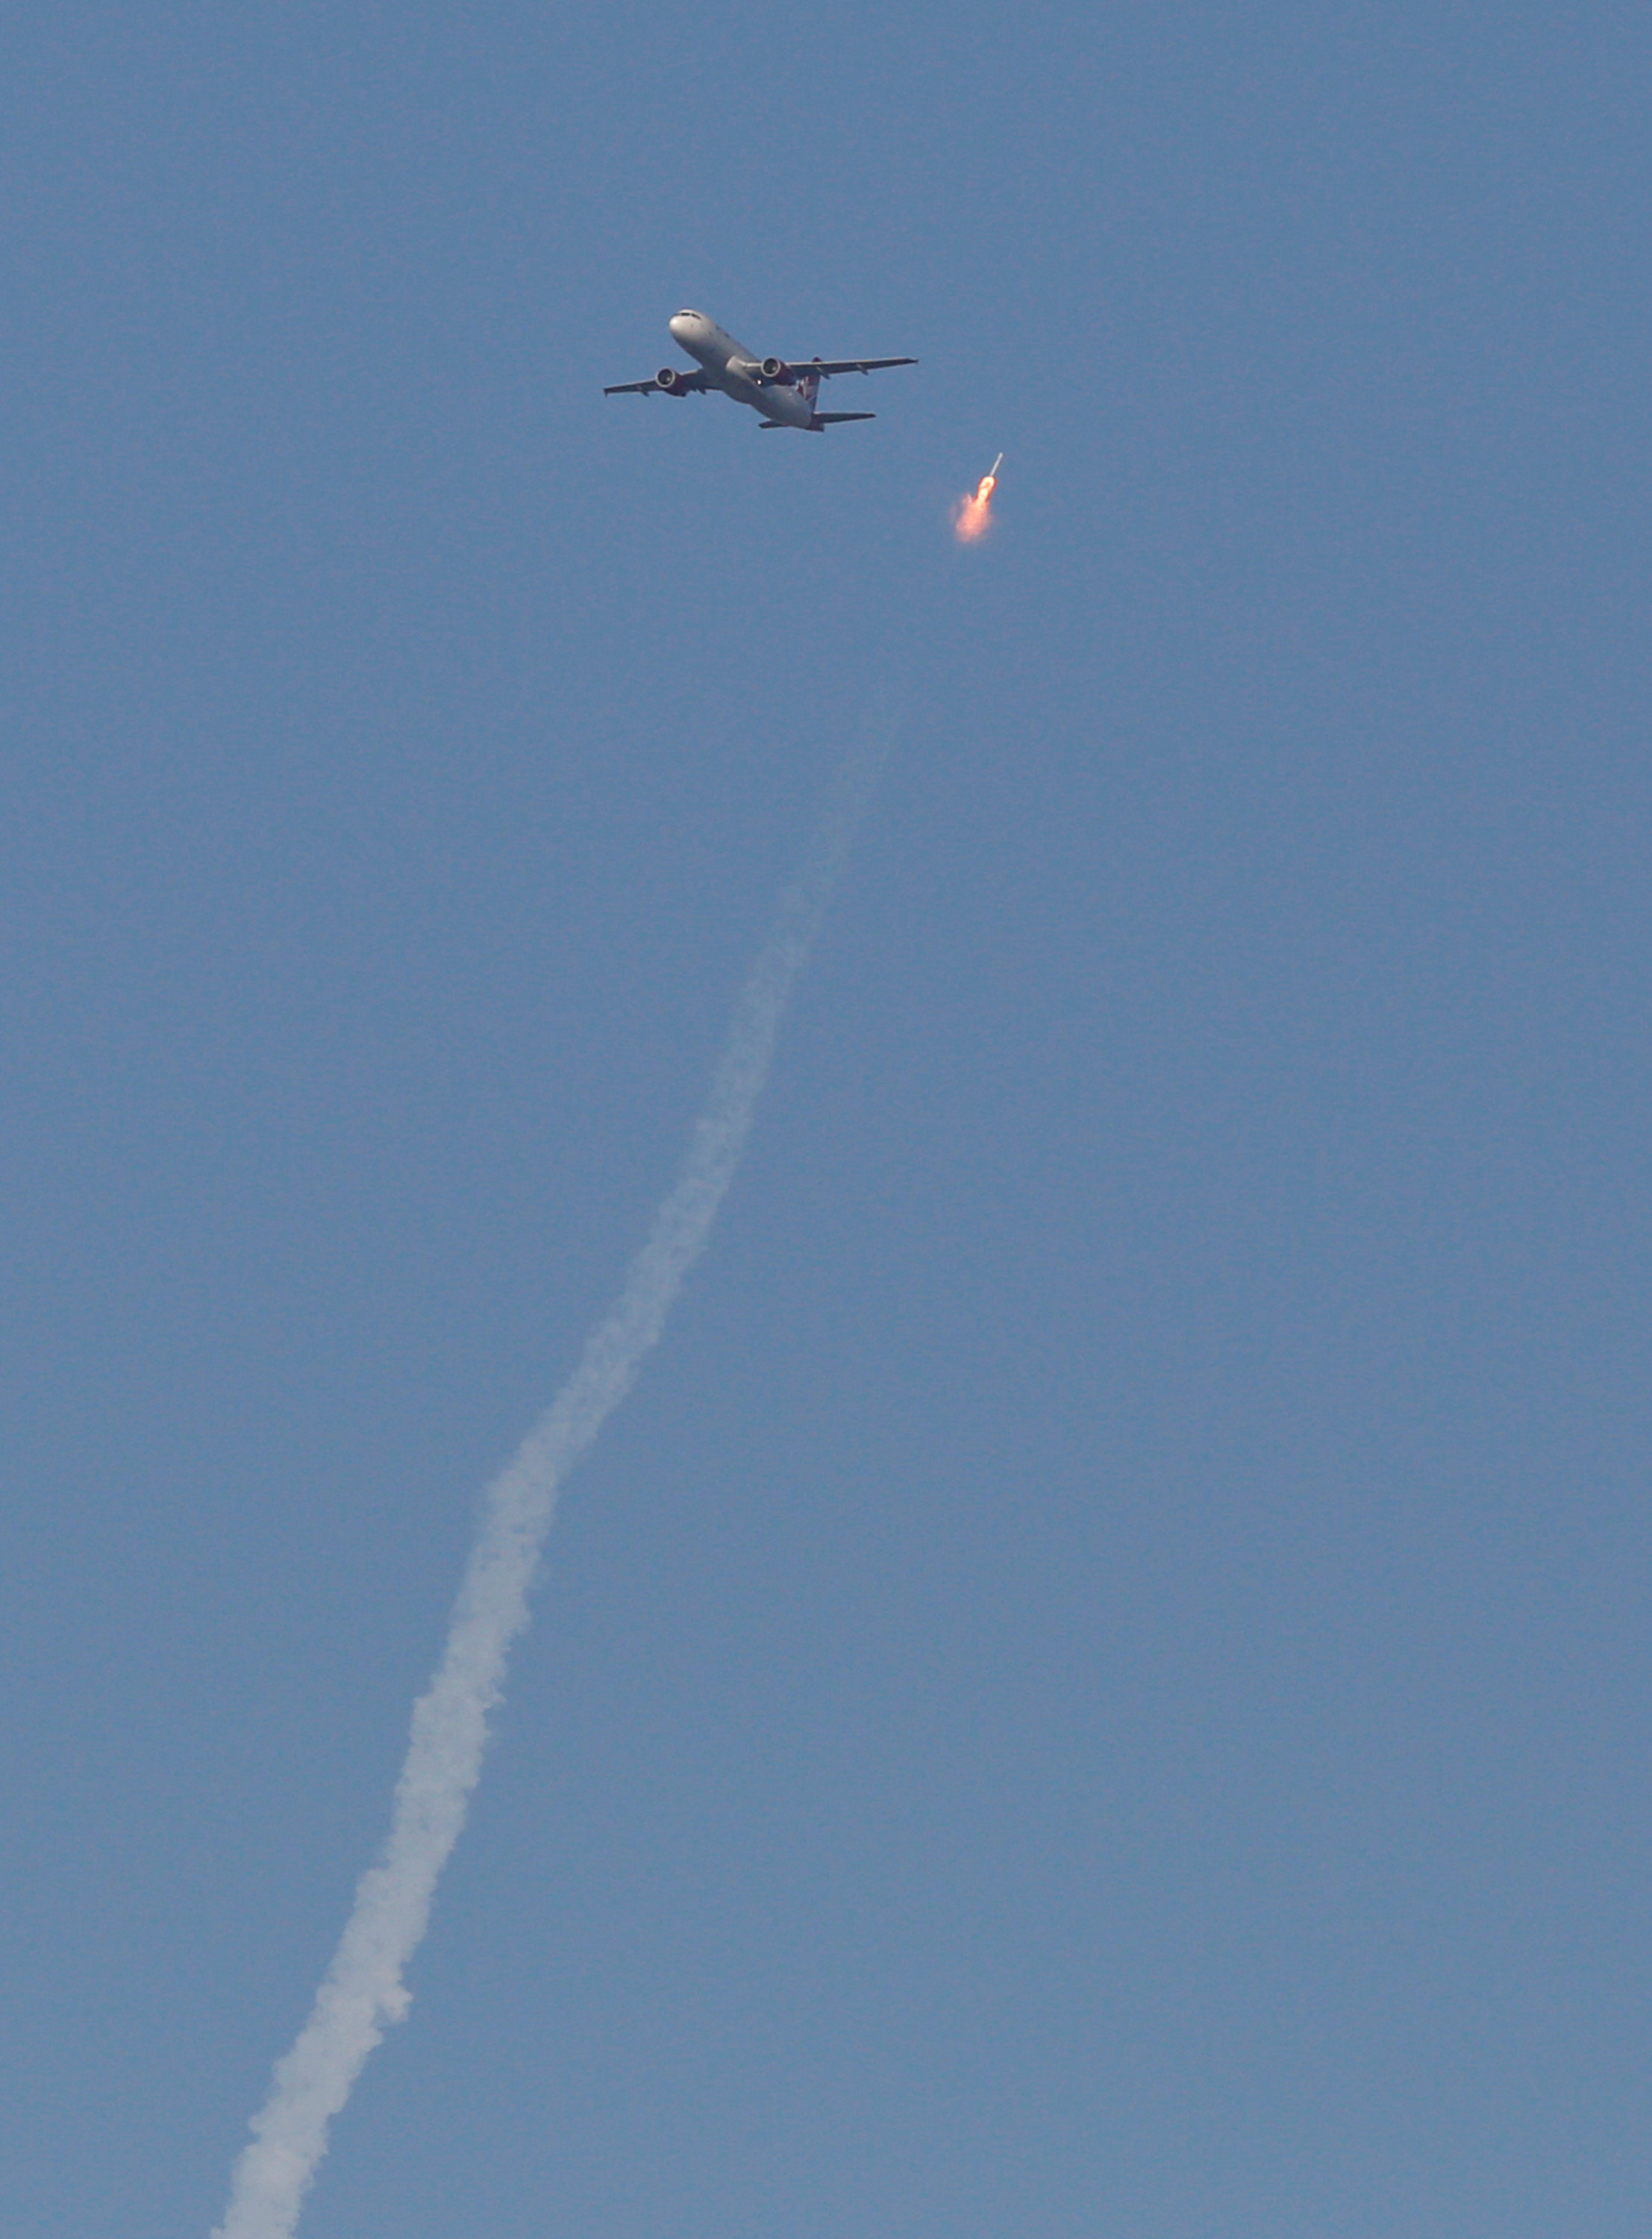 لحظة خطيرة من مرور طائرة ركاب بجوار صاروخ فضاء